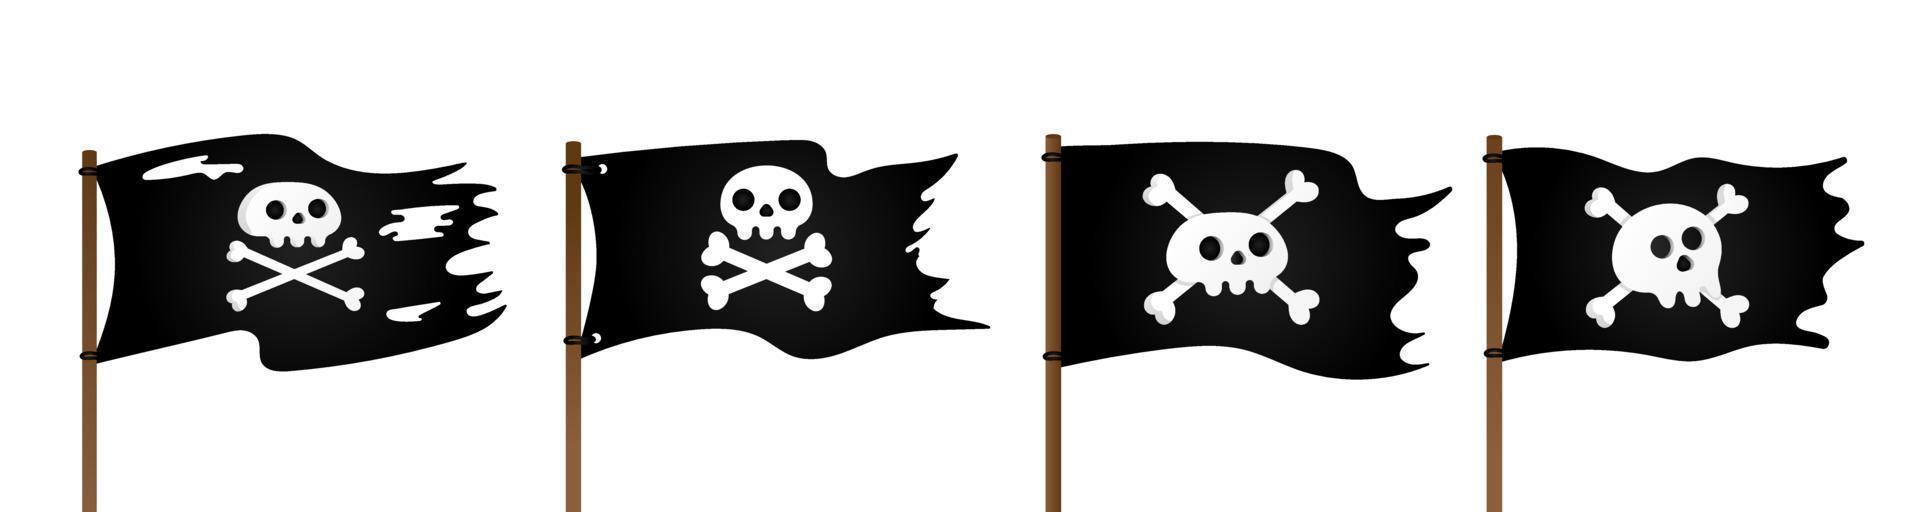 4 Piratenflagge mit lustigem Rogeras-Schädel und kreuzenden Knochen im flachen Stil, Vektorgrafik vektor